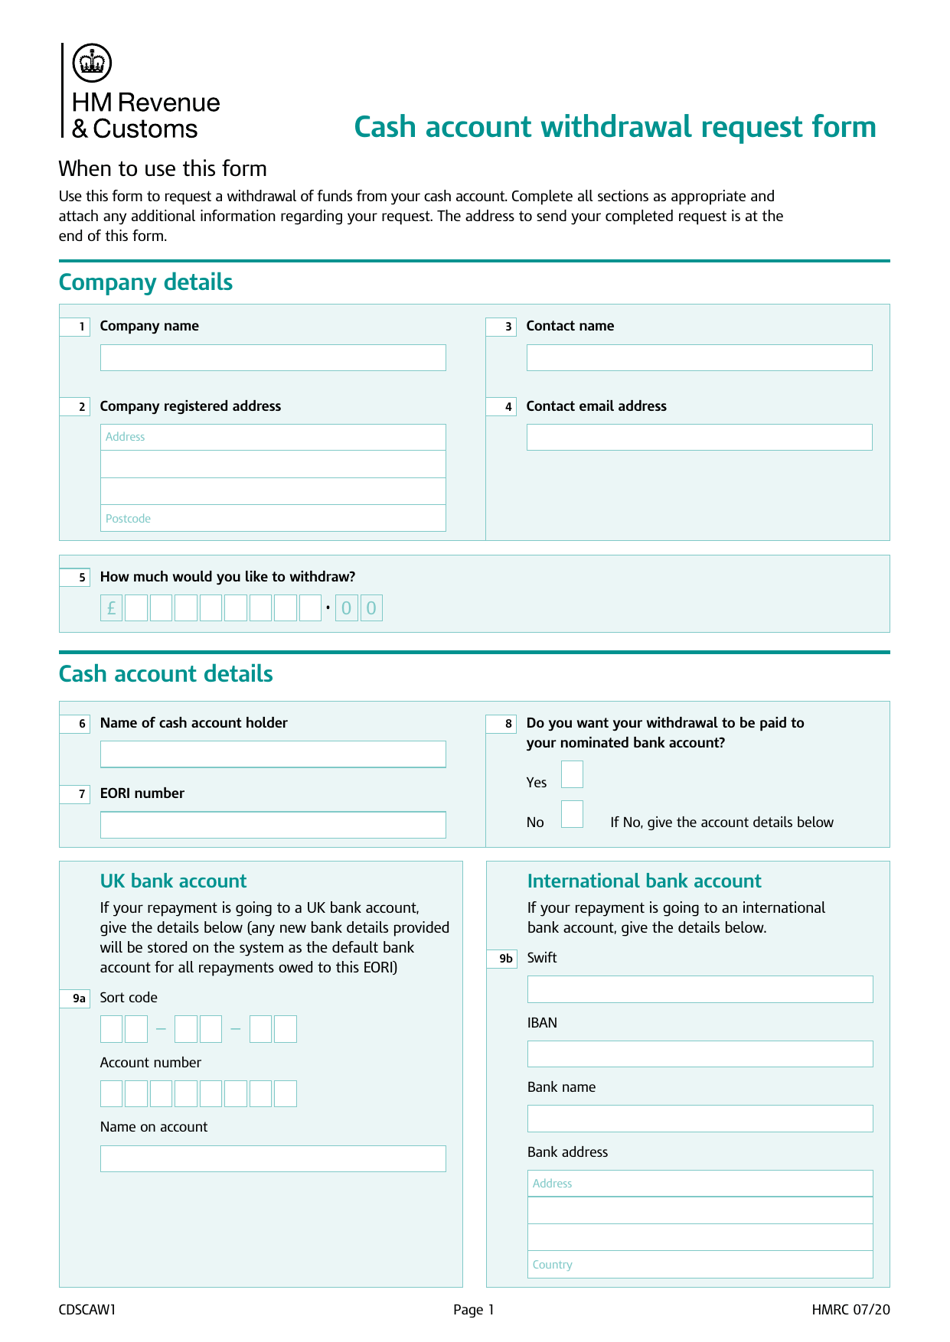 Form CDSCAW1 Cash Account Withdrawal Request Form - United Kingdom, Page 1